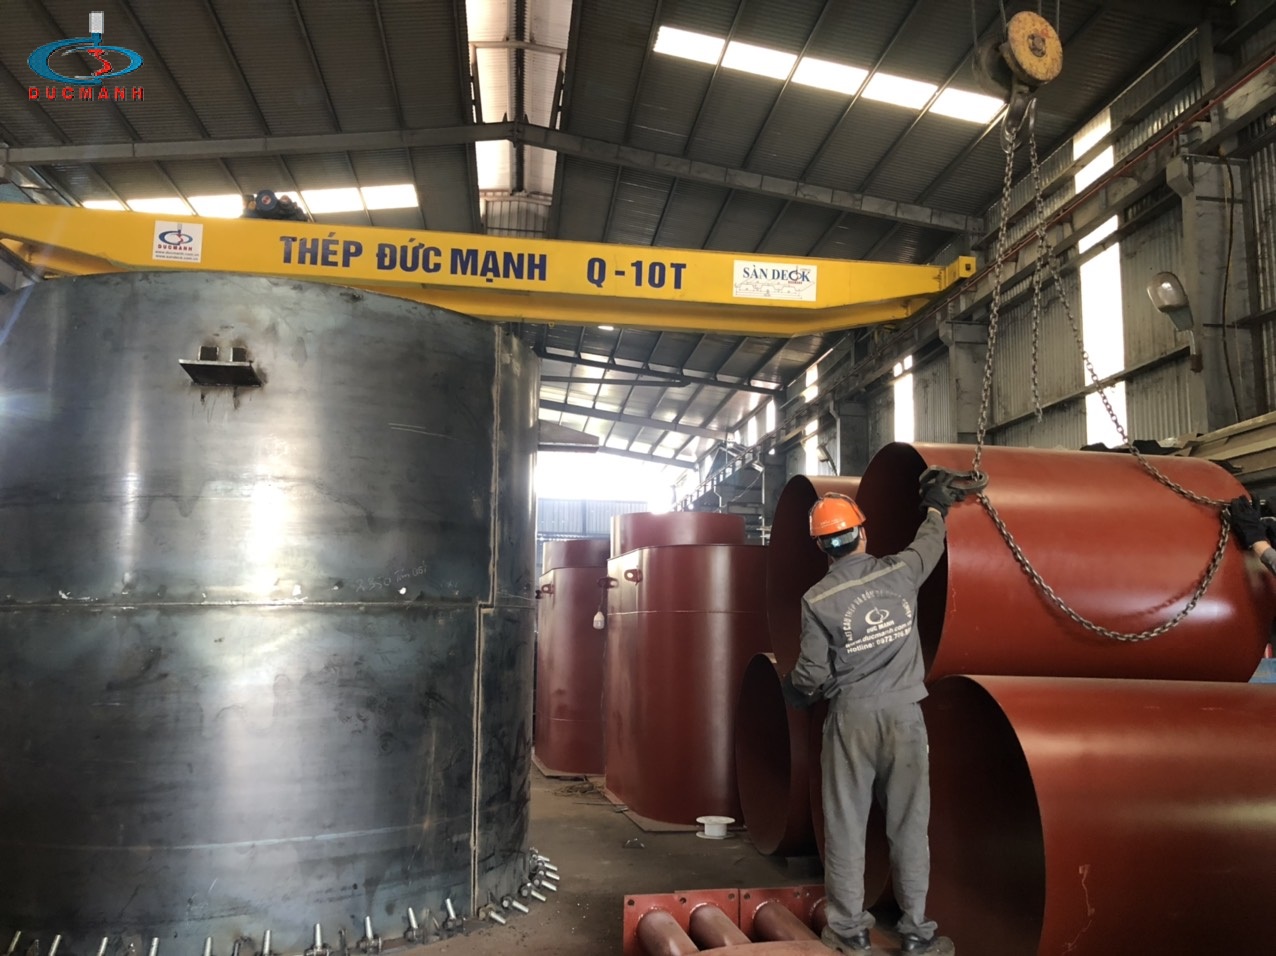 quy trình dịch vụ lốc ống thép tại đức mạnh steel